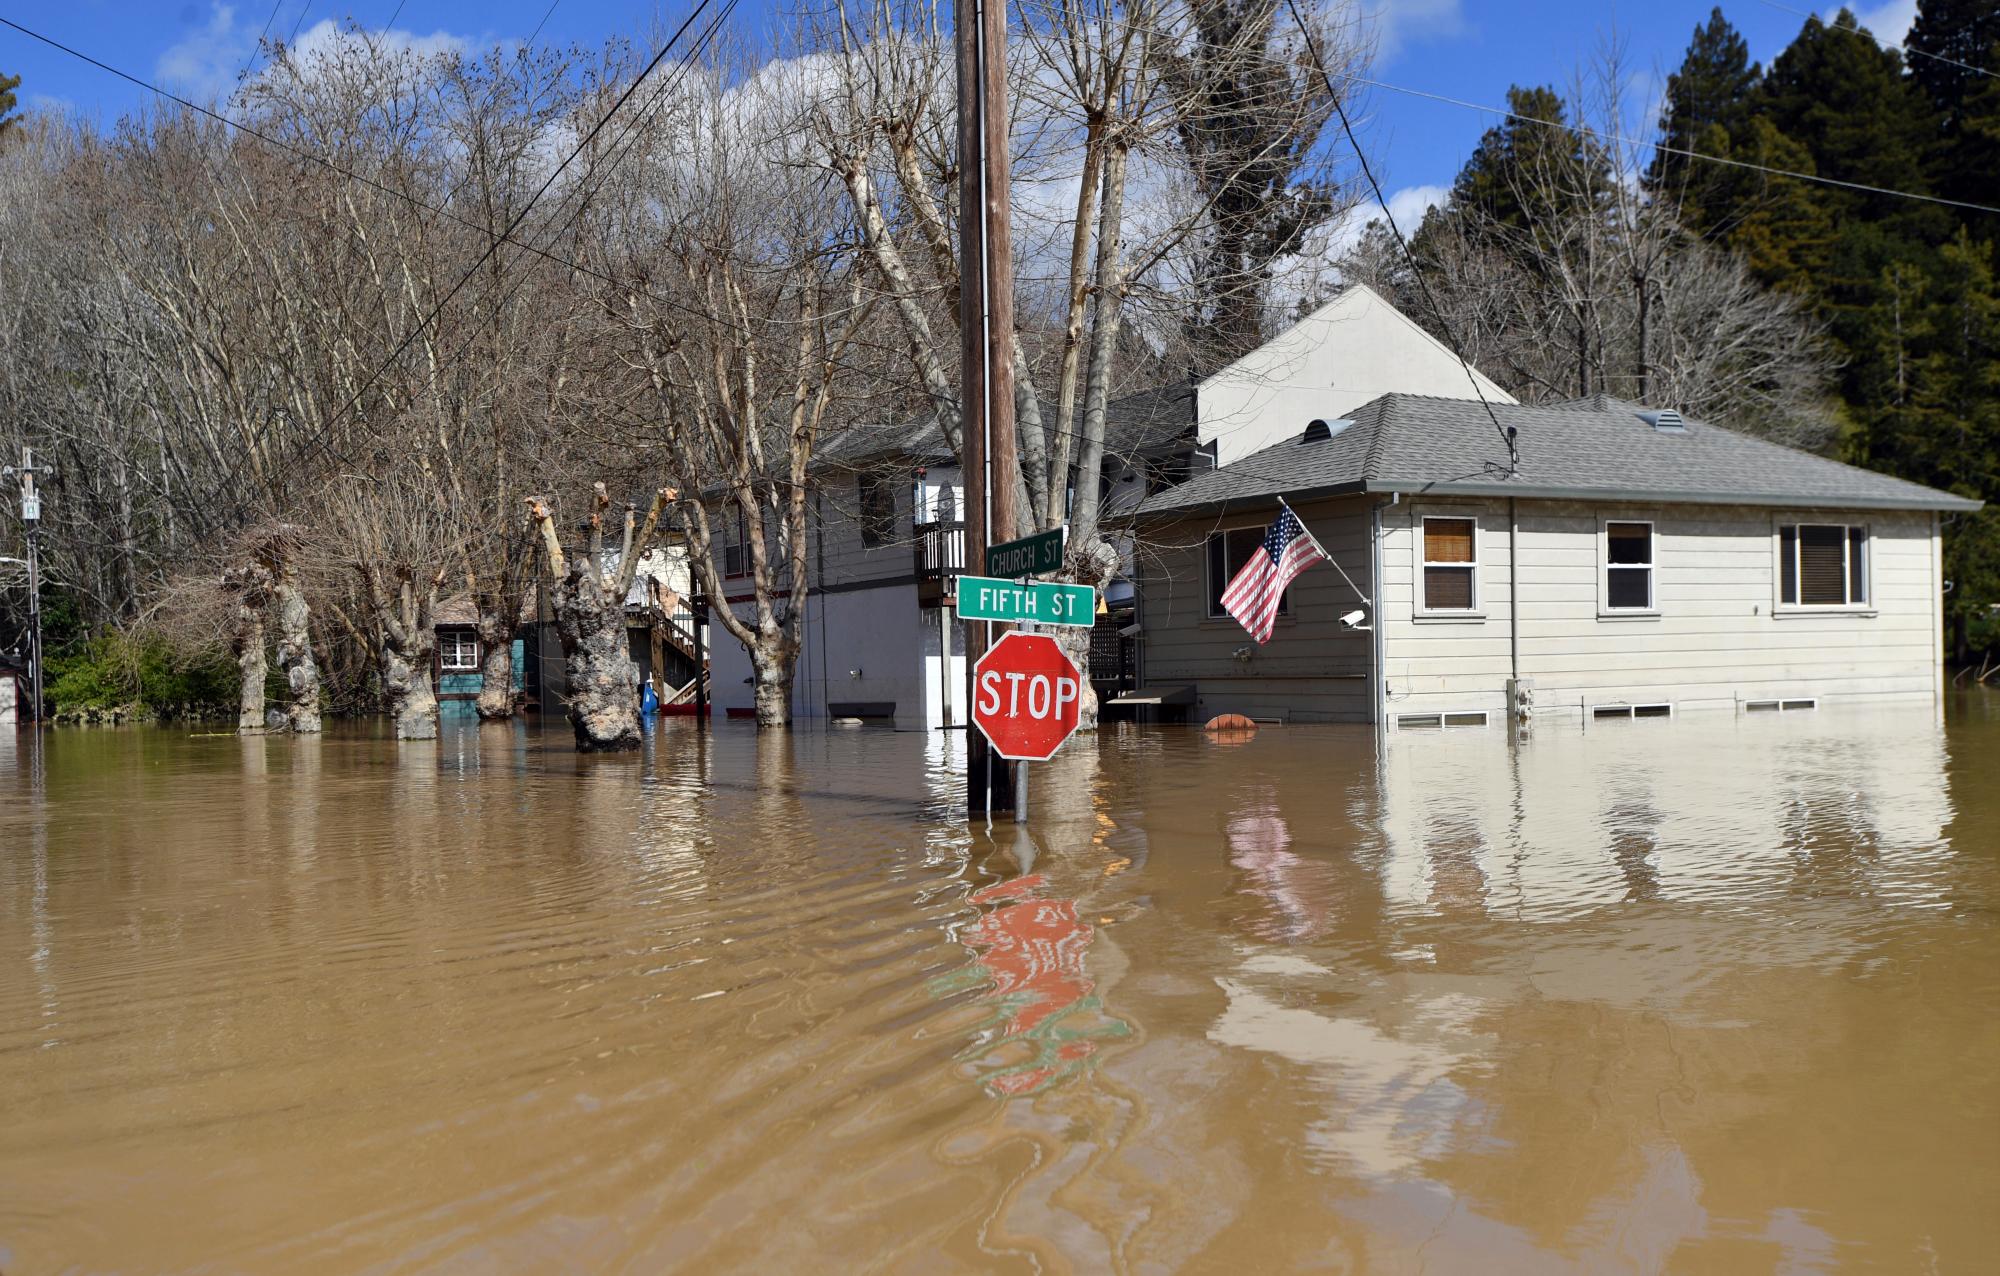 Una casa inundada se ve en la ciudad de Guerneville, California, el jueves 28 de febrero de 2019. El gobernador Gavin Newsom declaró una emergencia para cinco condados del norte después de una fuerte tormenta que causó la peor inundación en 20 años en un condado y la muerte de un hombre en otro.